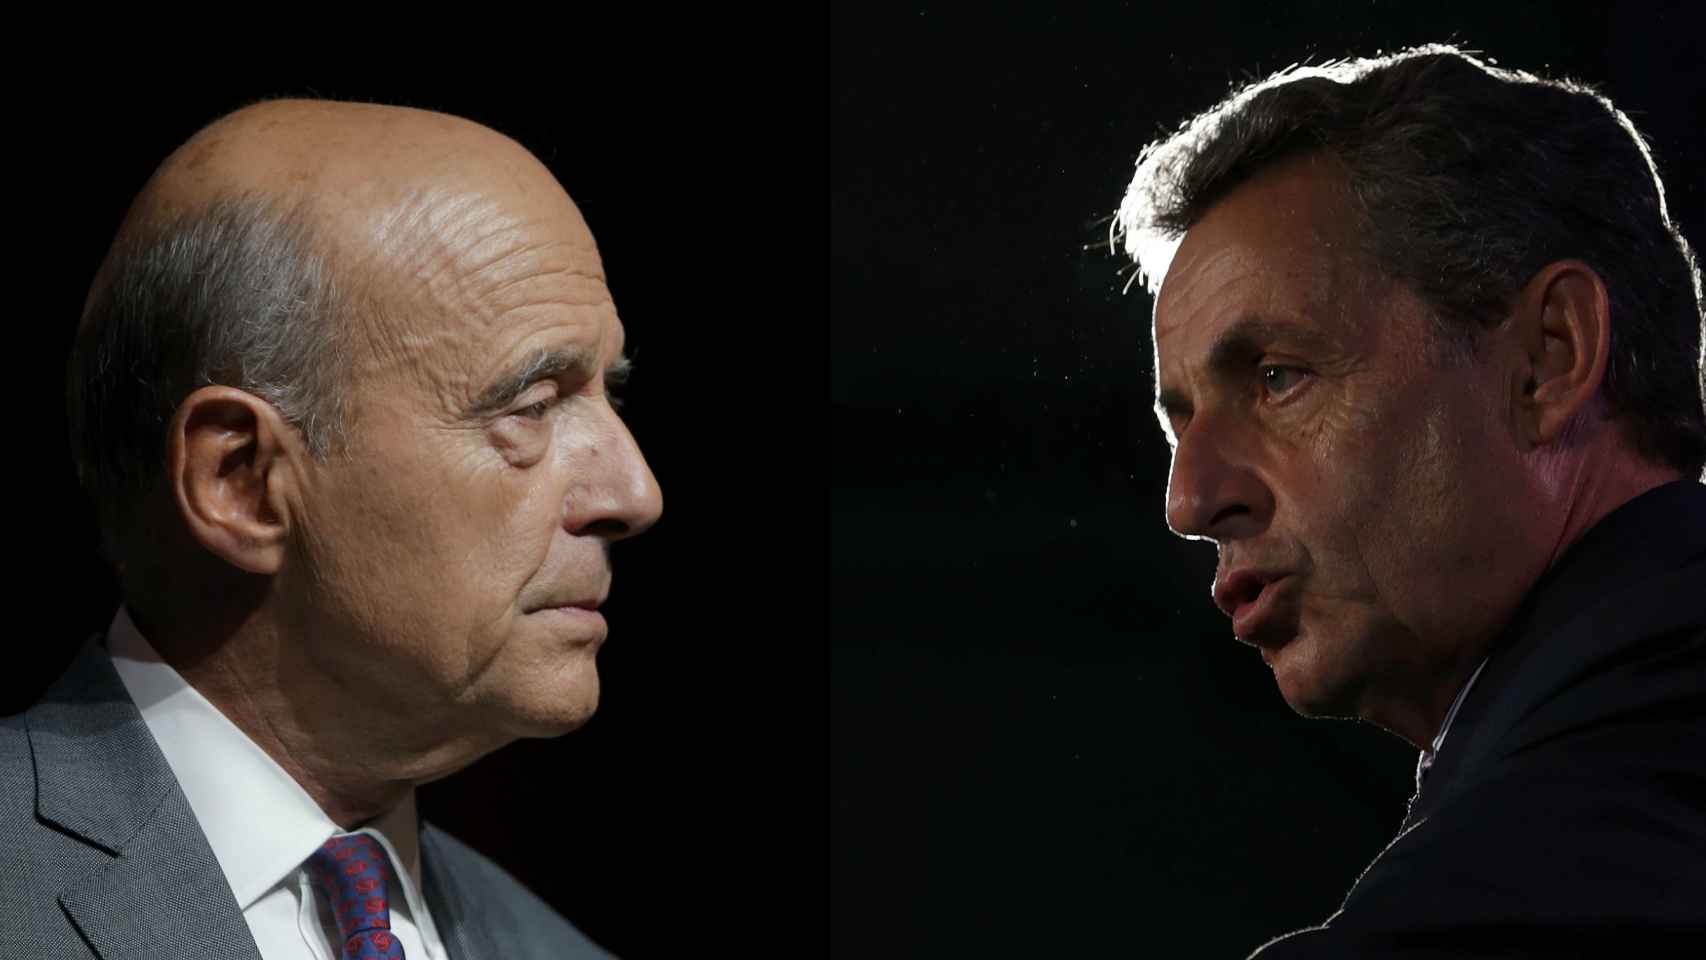 Sarkozy y Juppé tienen más posibilidades de ganar, según las encuestas.